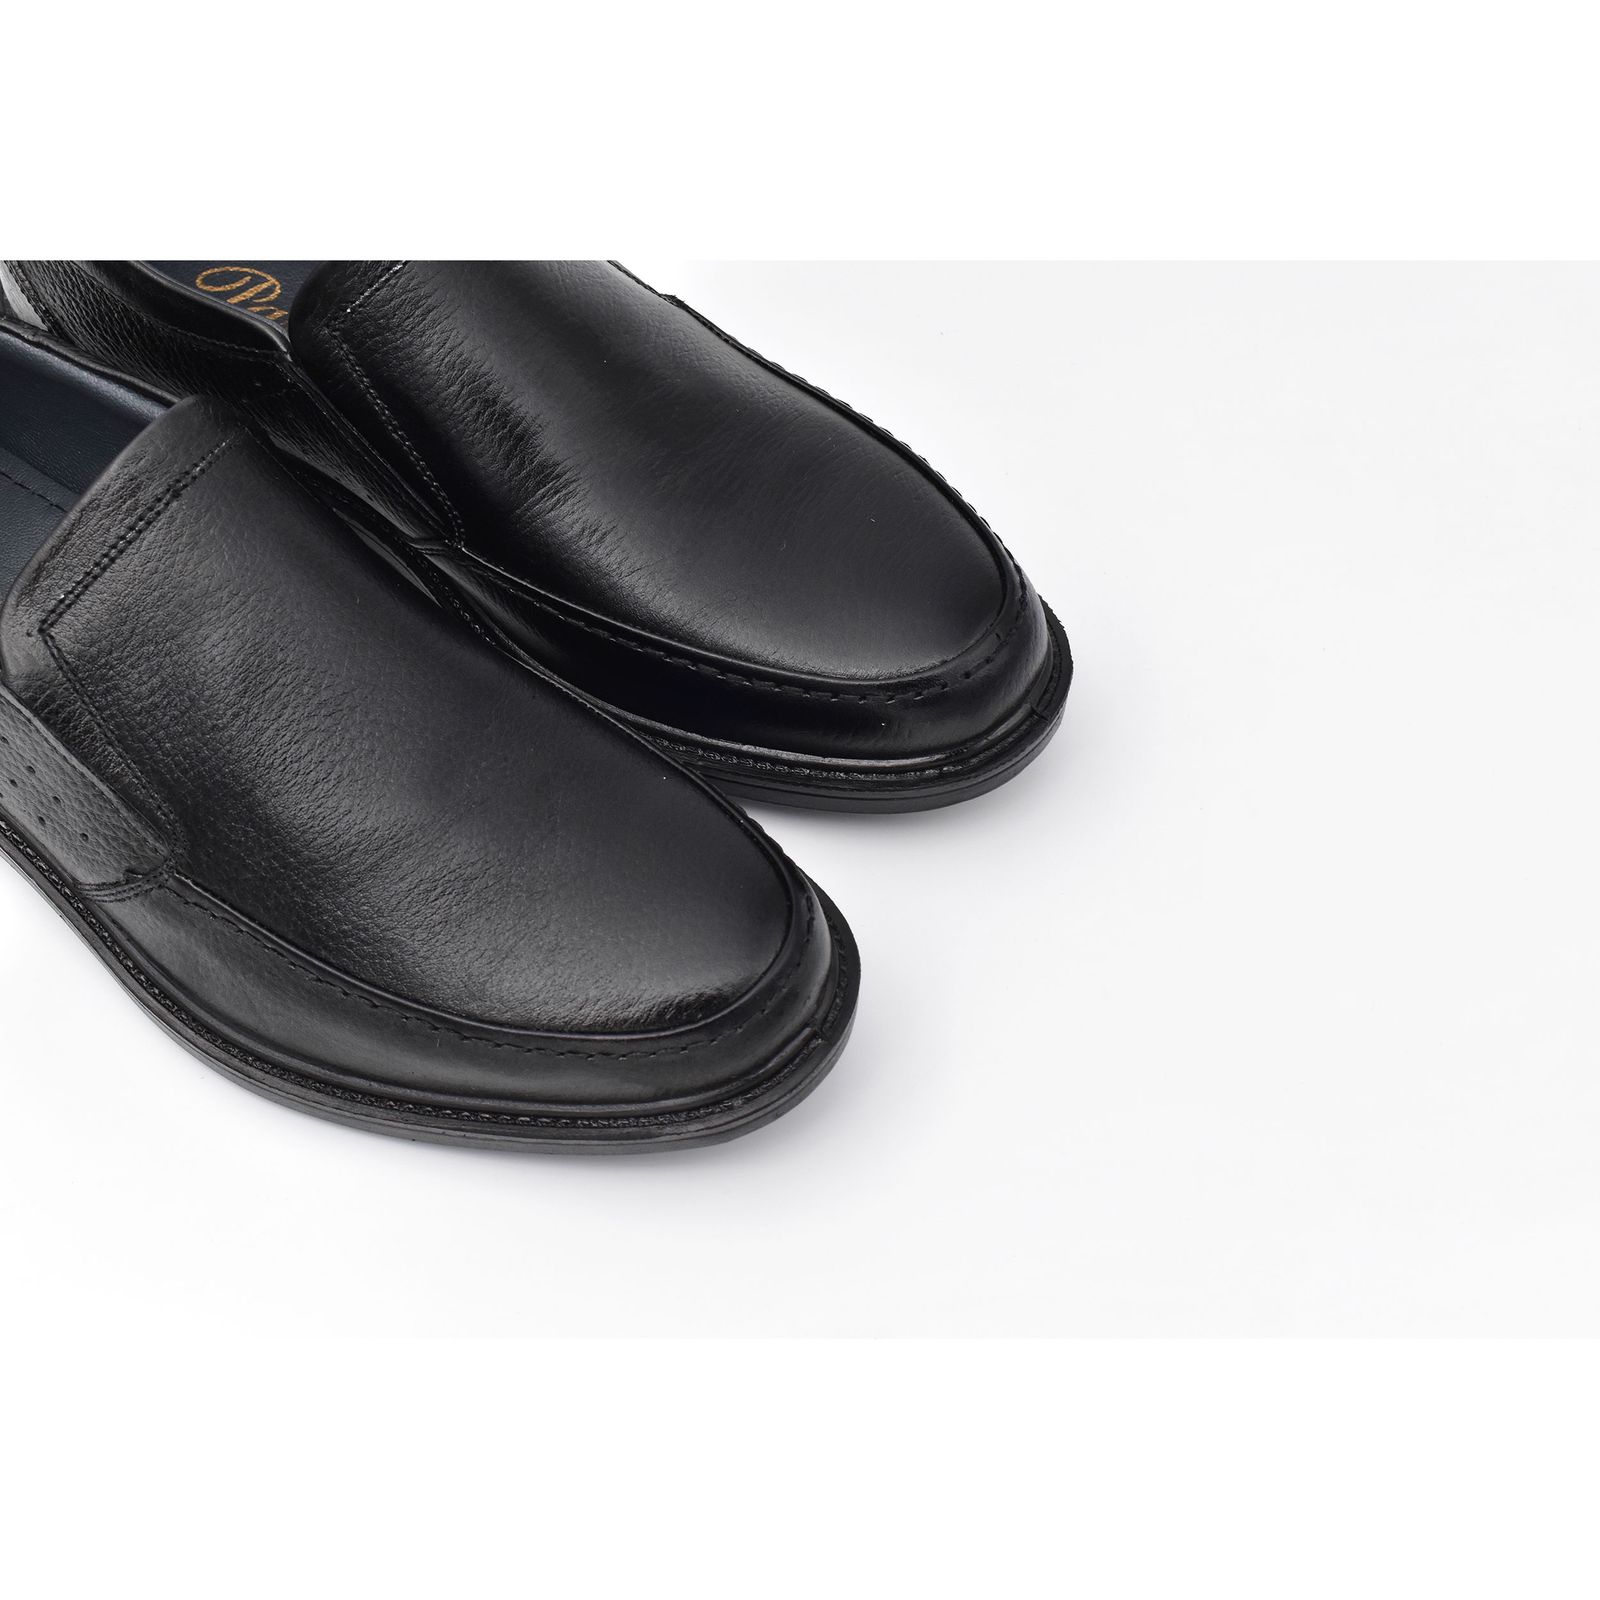 کفش مردانه پاما مدل مورانو کد G1190 -  - 6